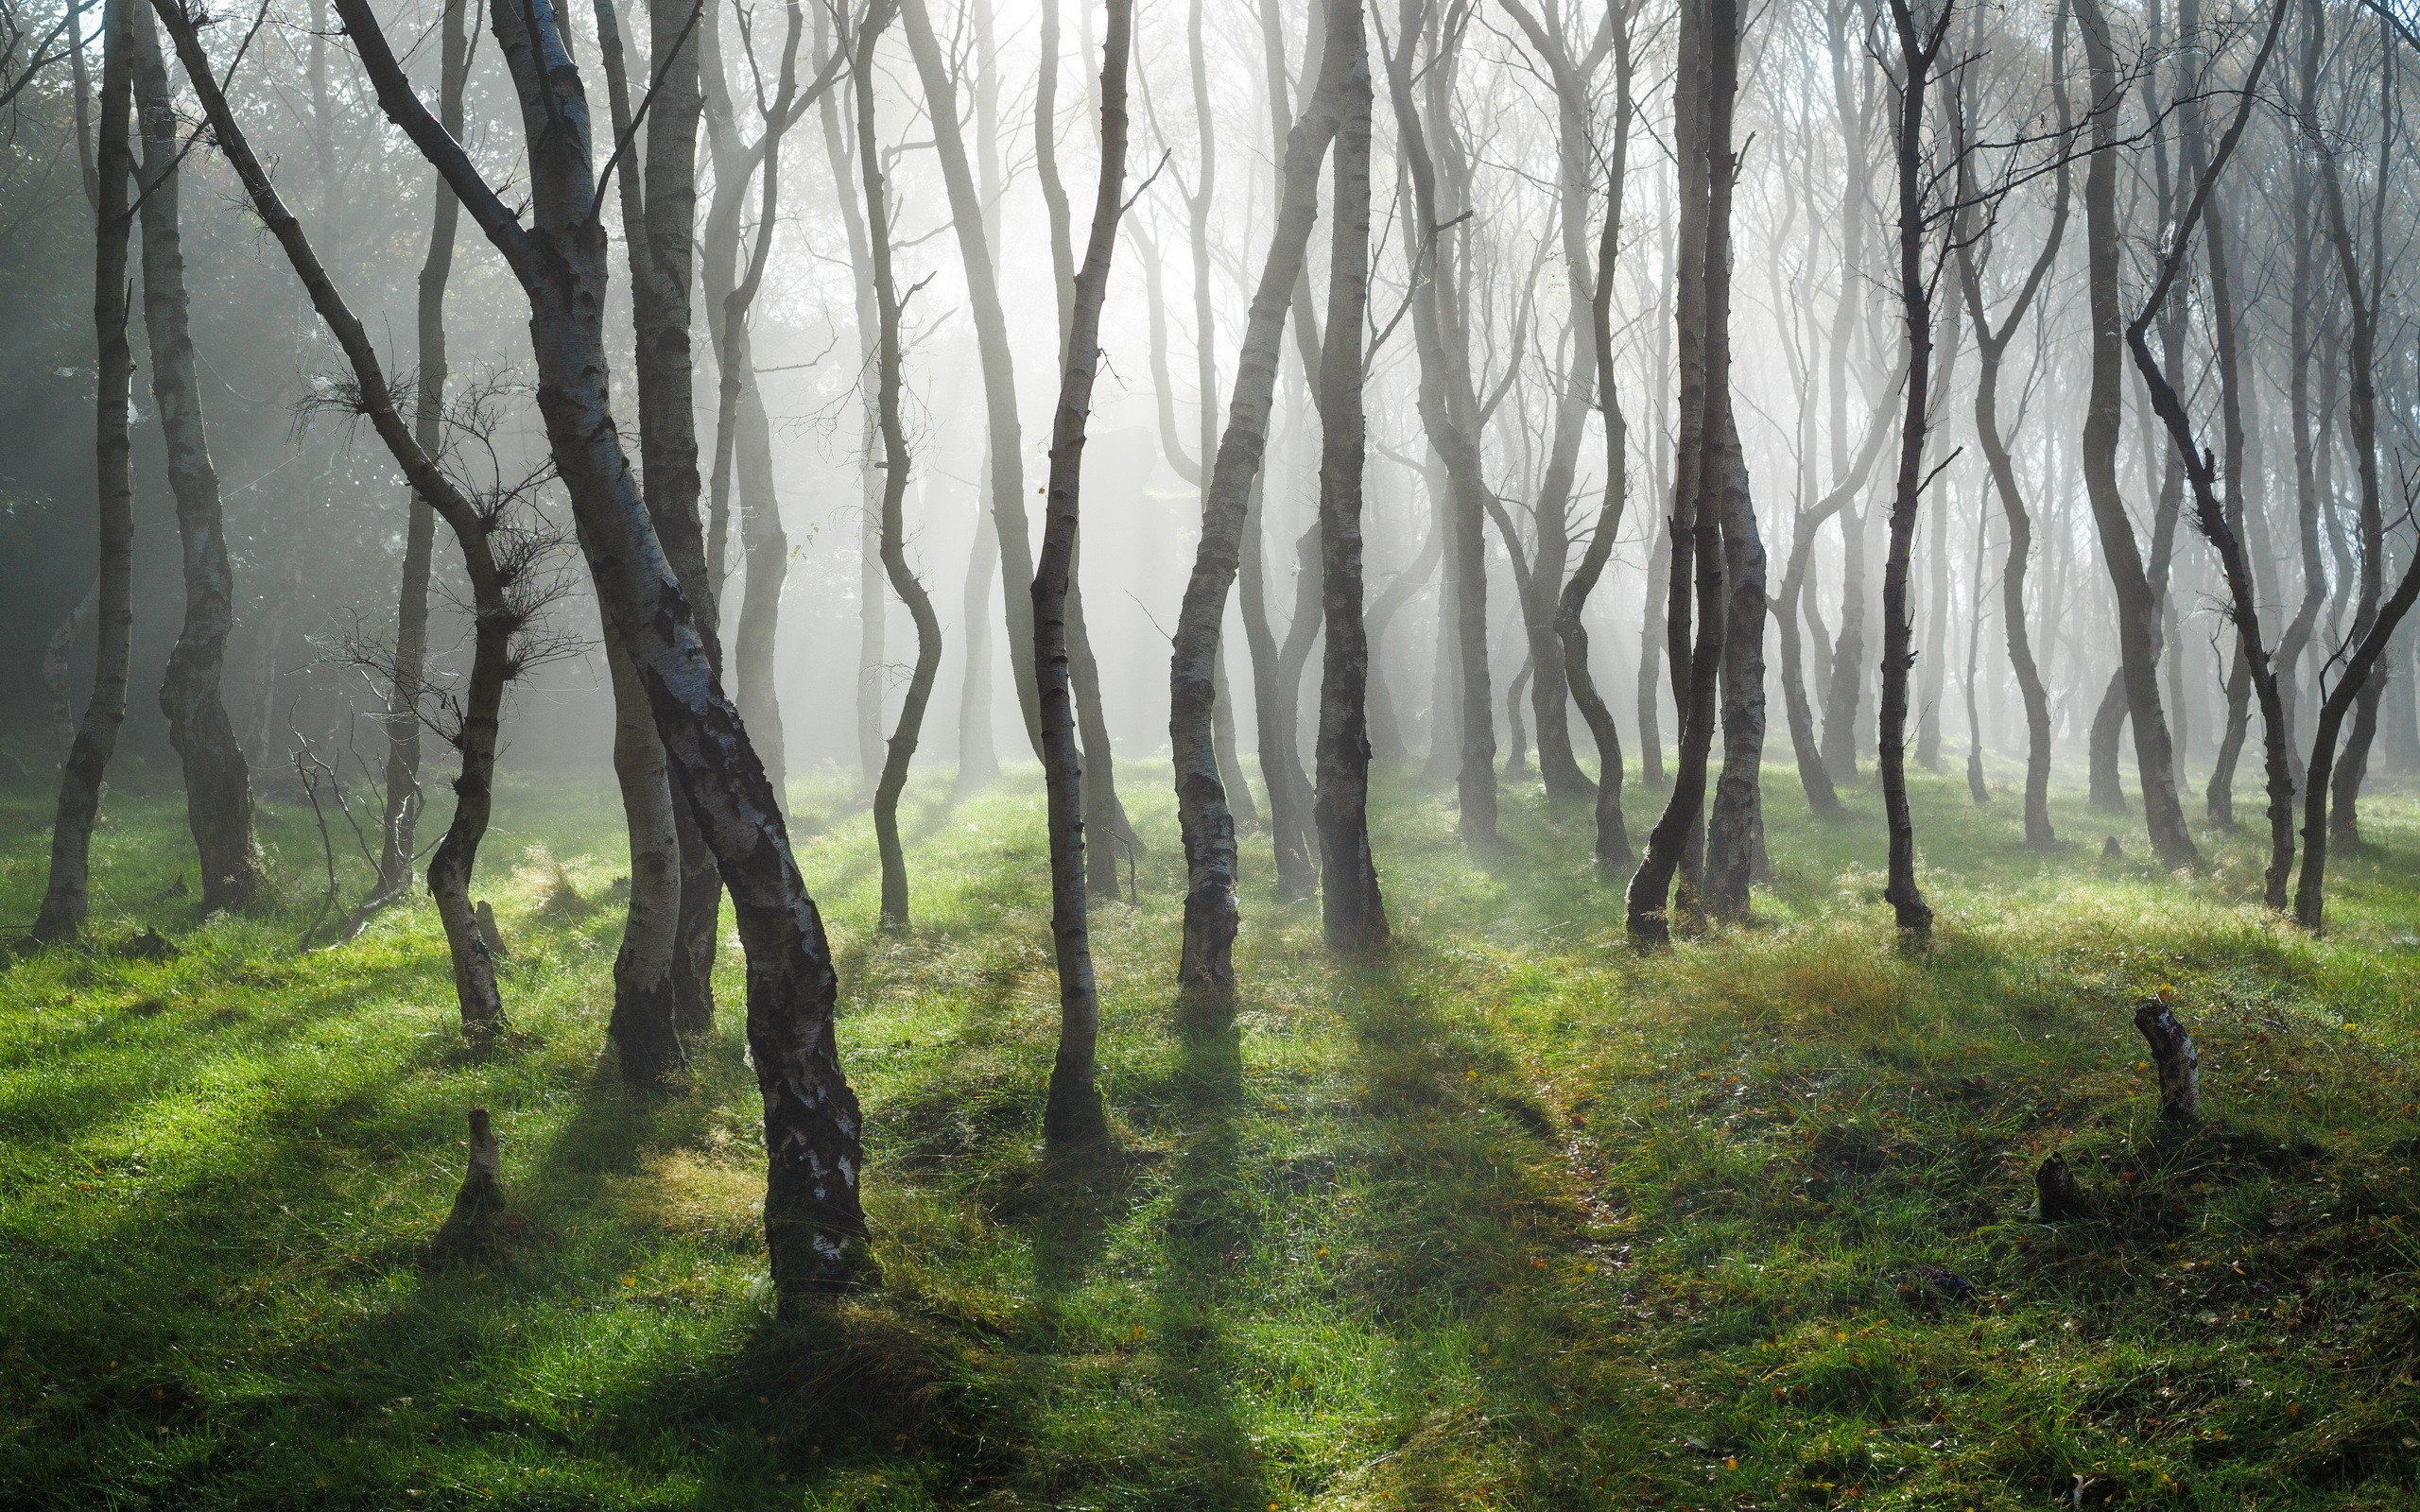 General 2560x1600 forest trees grass mist sunlight birch nature